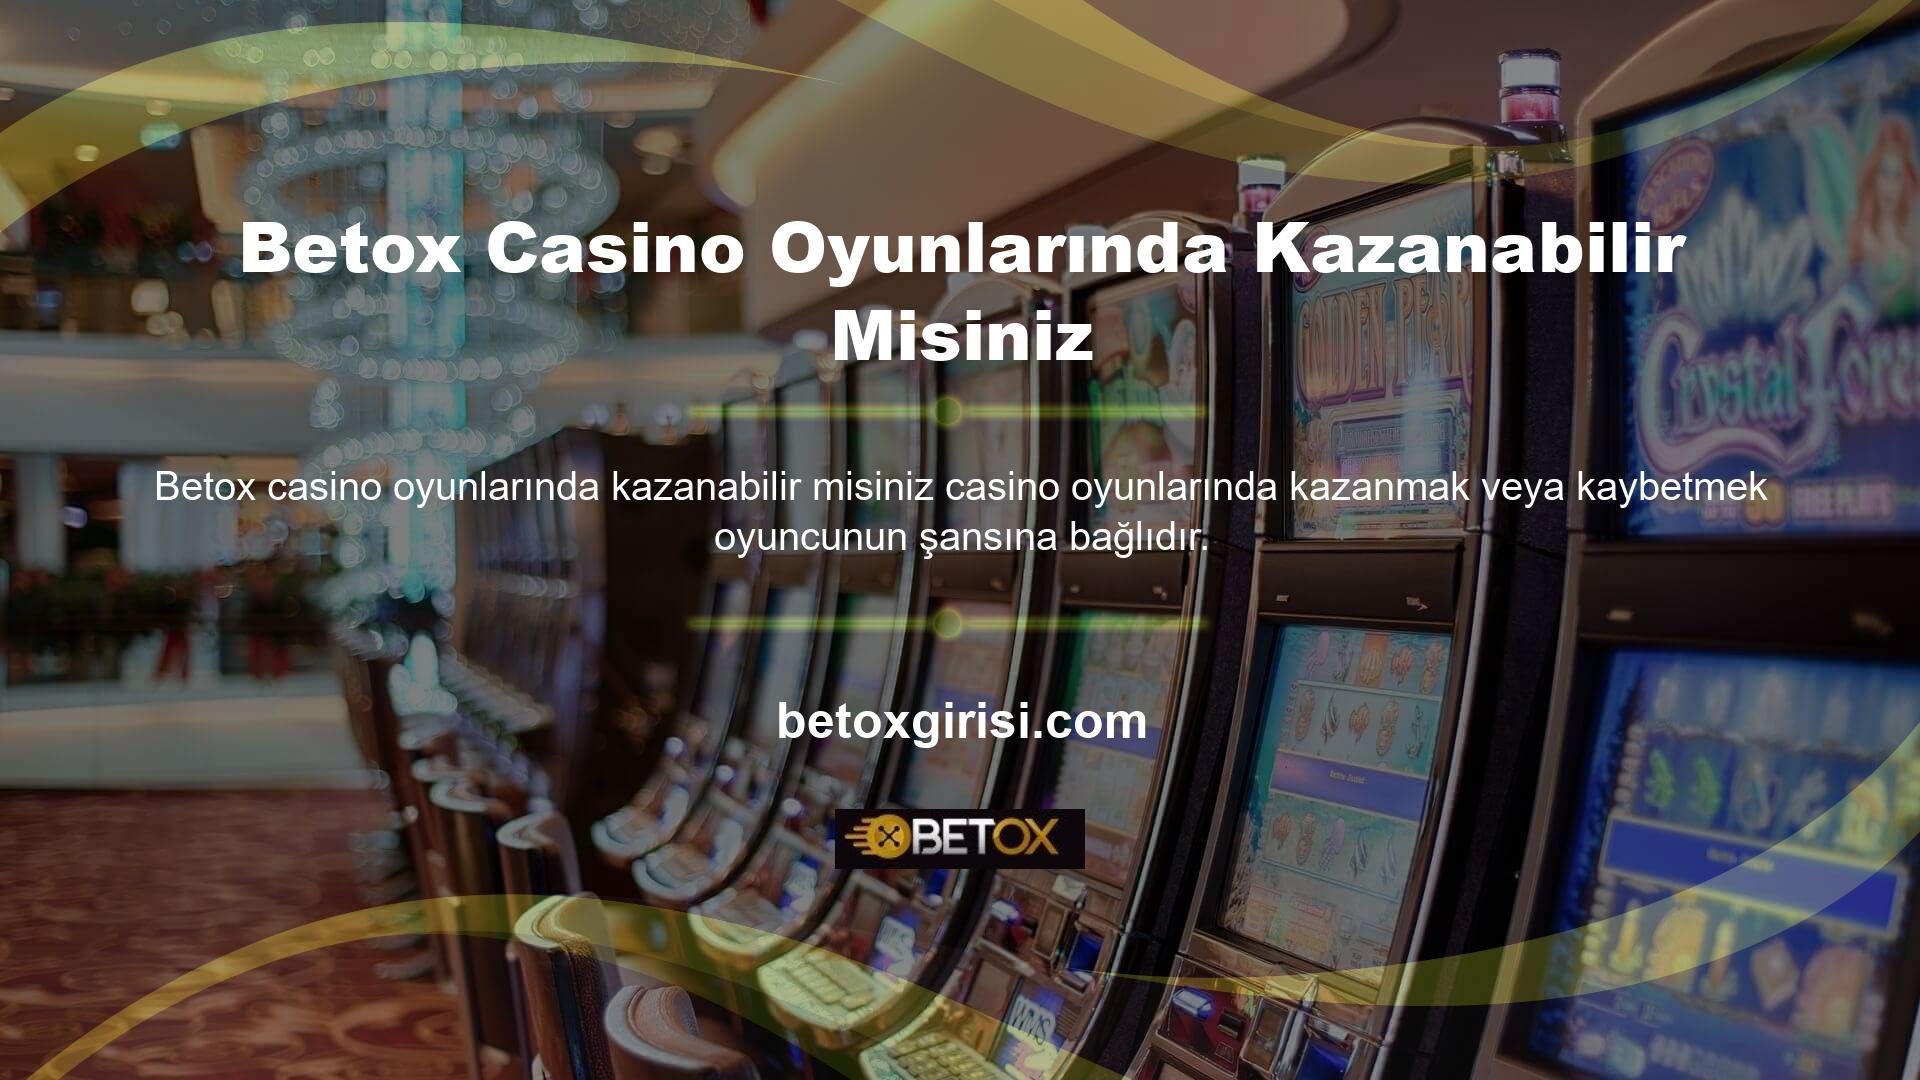 Betox casino oyunları, kurallarını bildiğiniz oyunları oynamanıza ve para kazanmak için şansınızı dikkatli kullanmanıza olanak sağlar